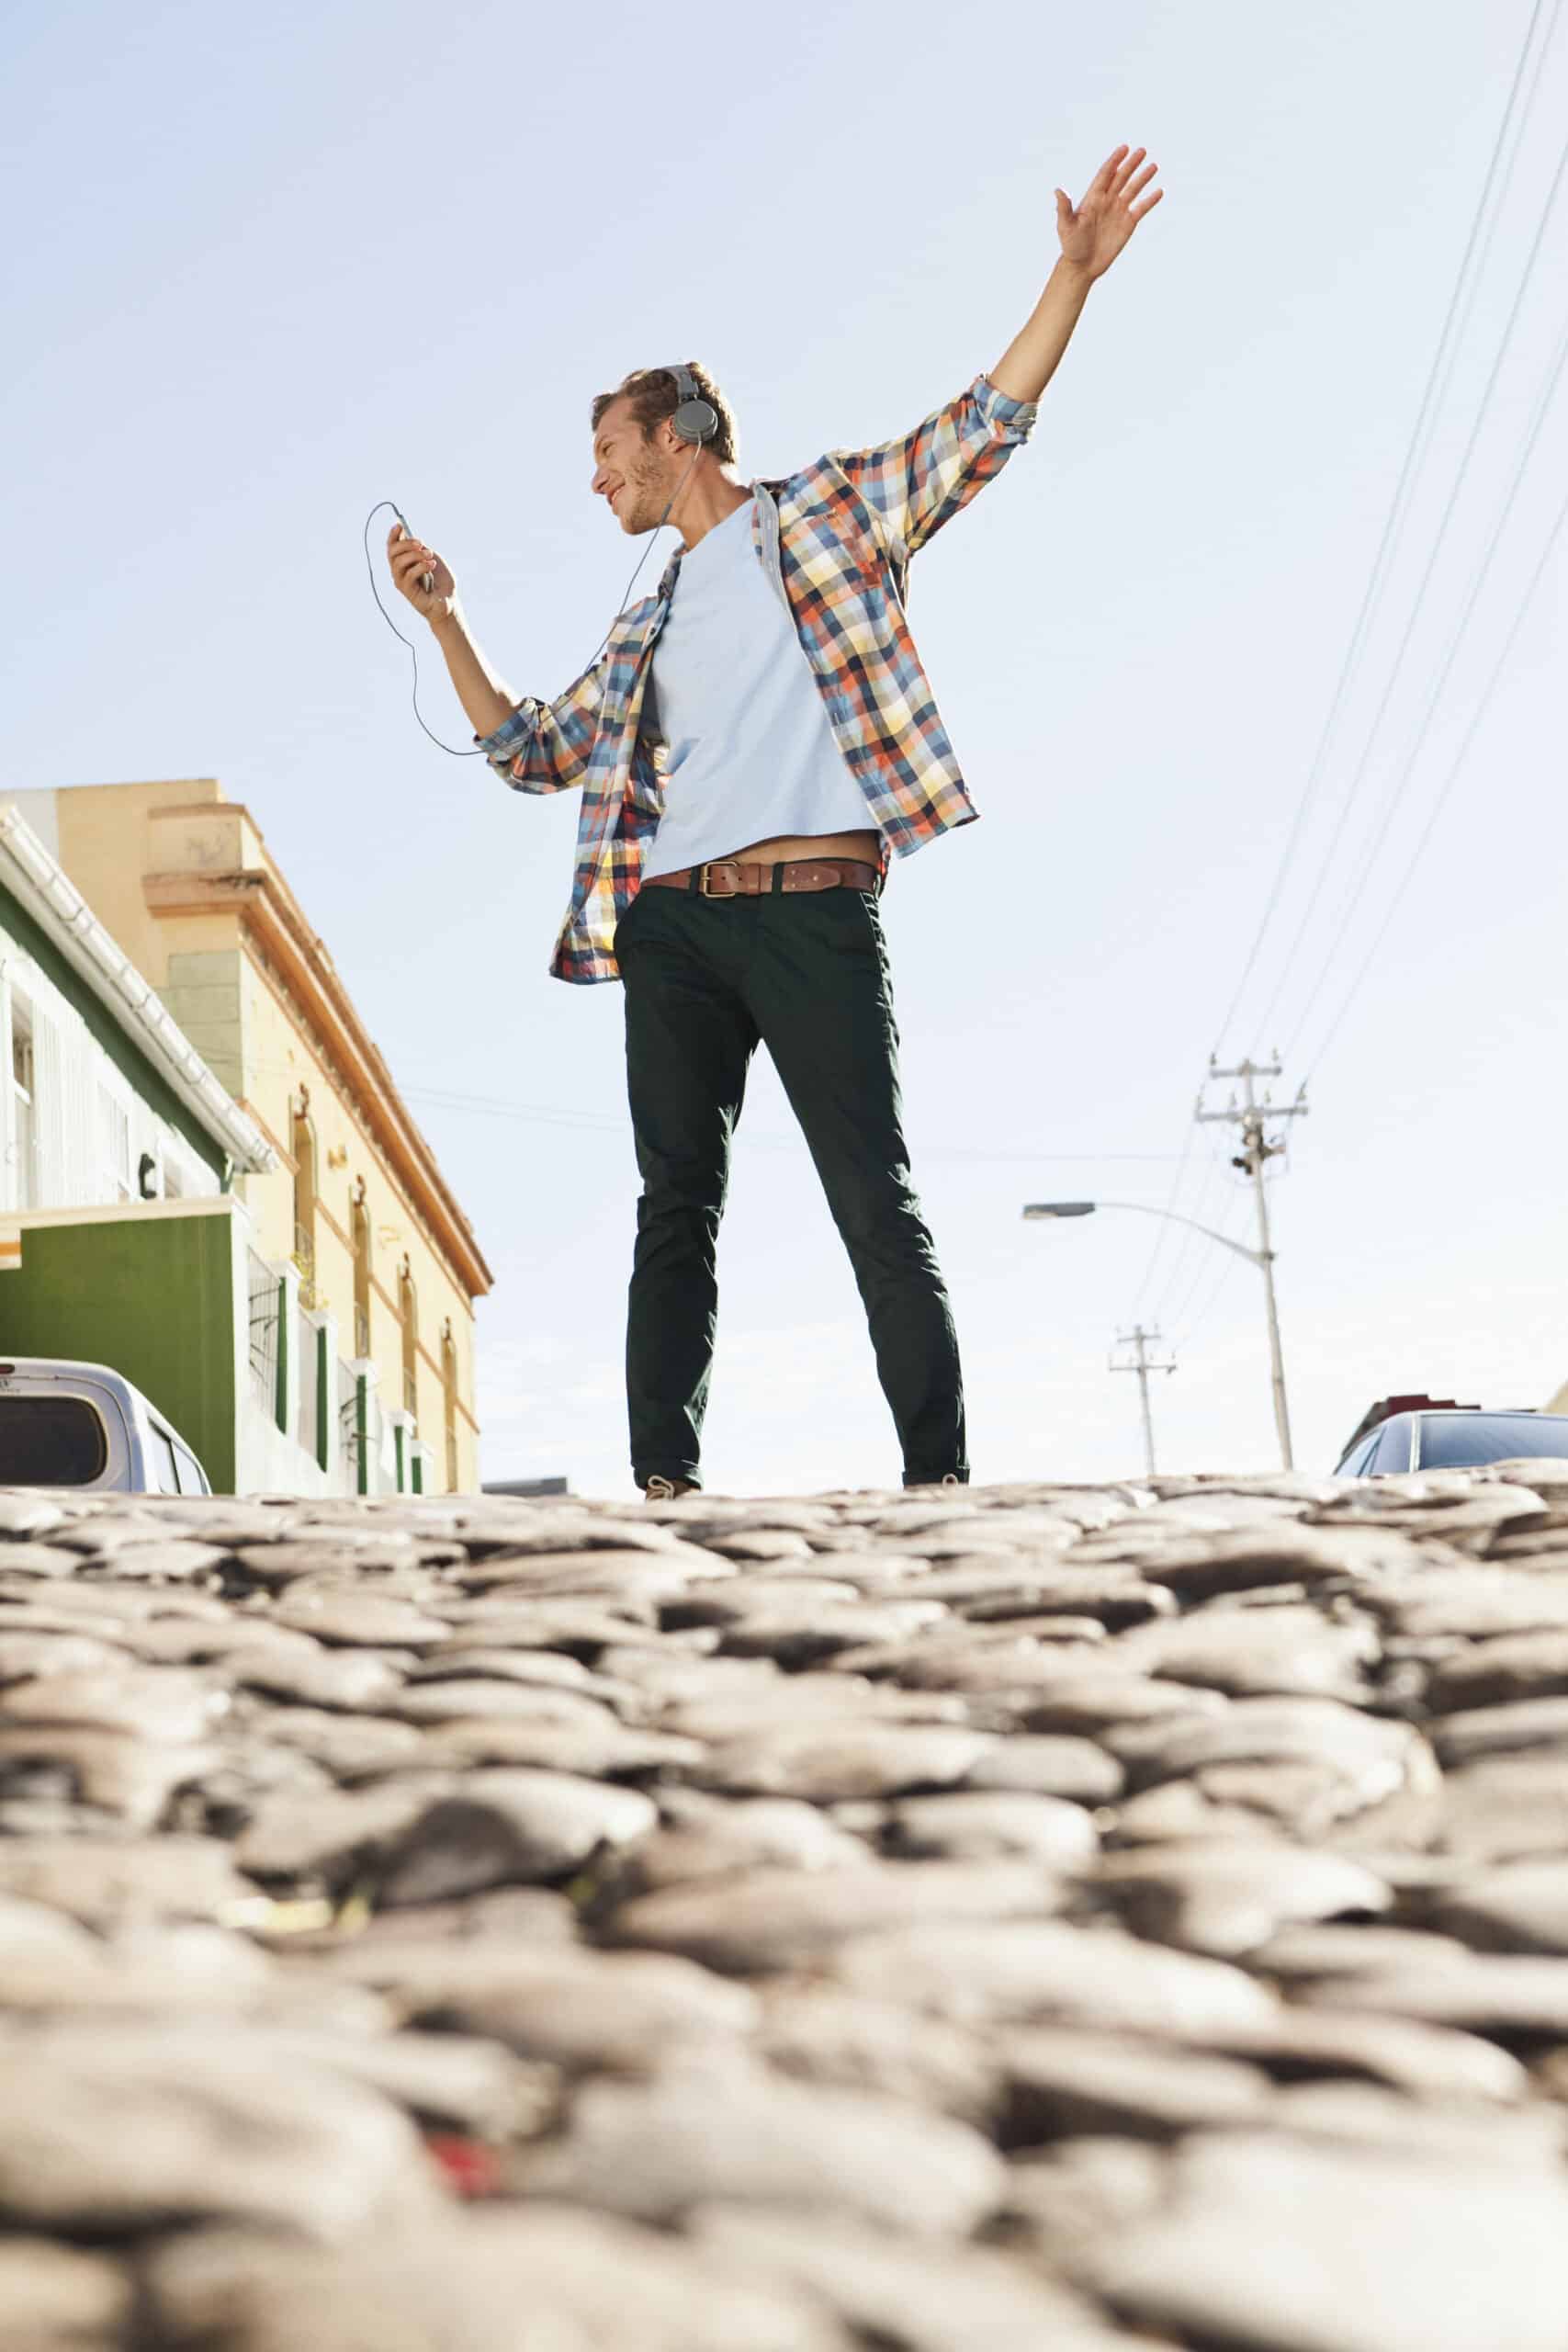 Ein Mann mit Kopfhörern tanzt fröhlich auf einer Kopfsteinpflasterstraße und schwenkt einen Arm in der Luft, über ihm ein klarer blauer Himmel und im Hintergrund Gebäude. © Fotografie Tomas Rodriguez